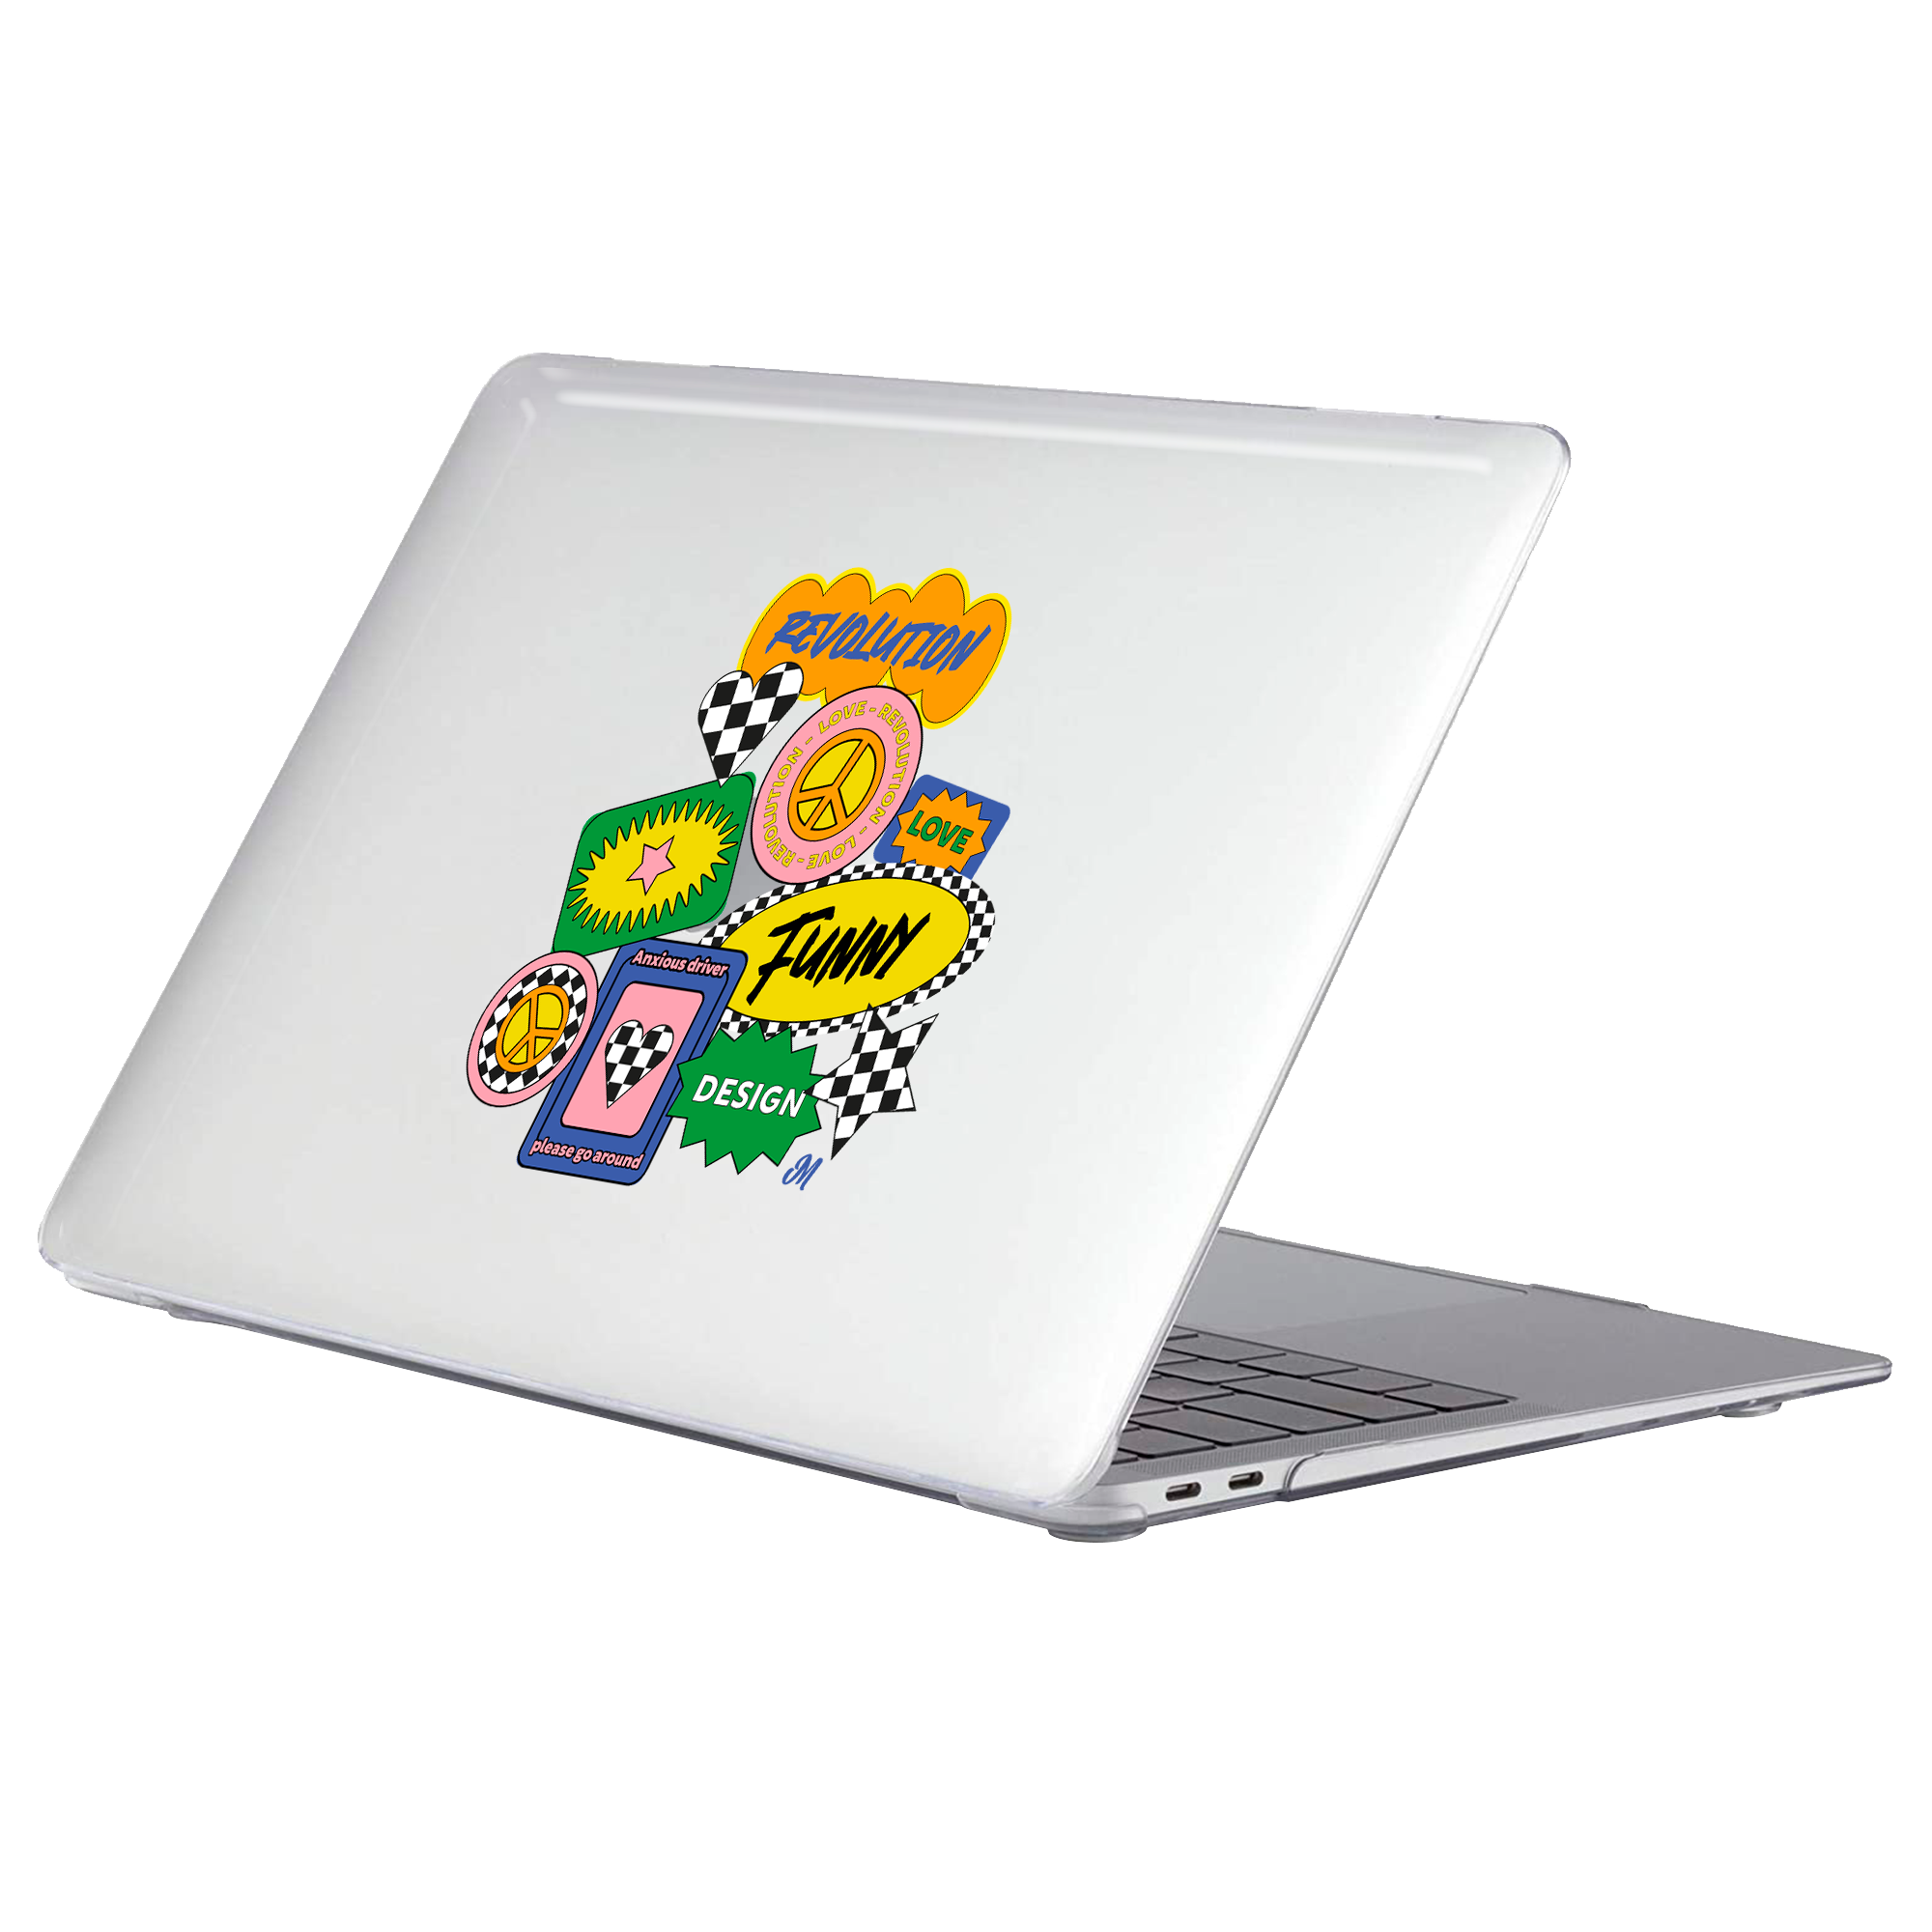 Revolution MacBook Case - Mandala Cases 